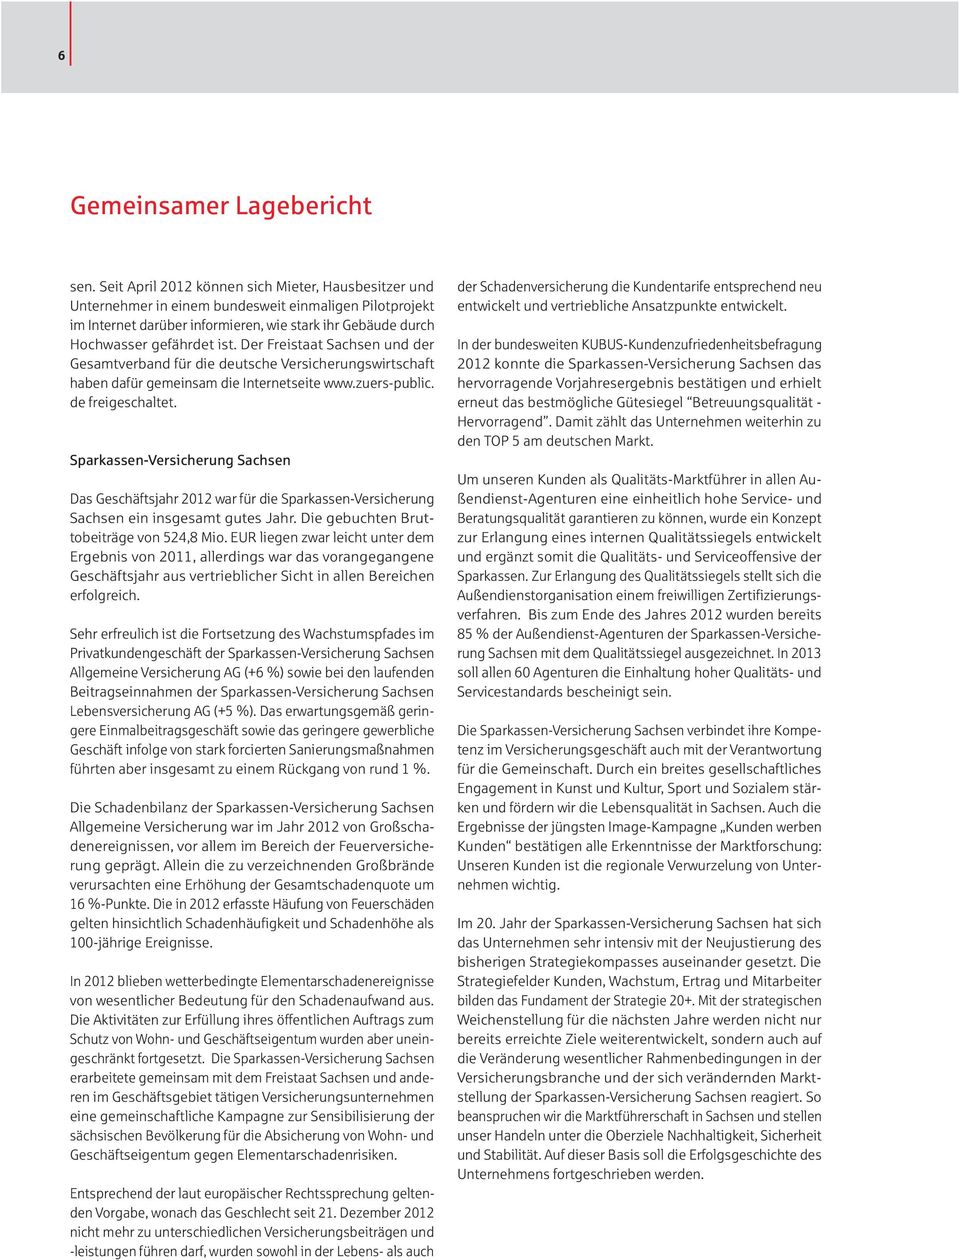 Der Freistaat Sachsen und der Gesamtverband für die deutsche Versicherungswirtschaft haben dafür gemeinsam die Internetseite www.zuers-public. de freigeschaltet.